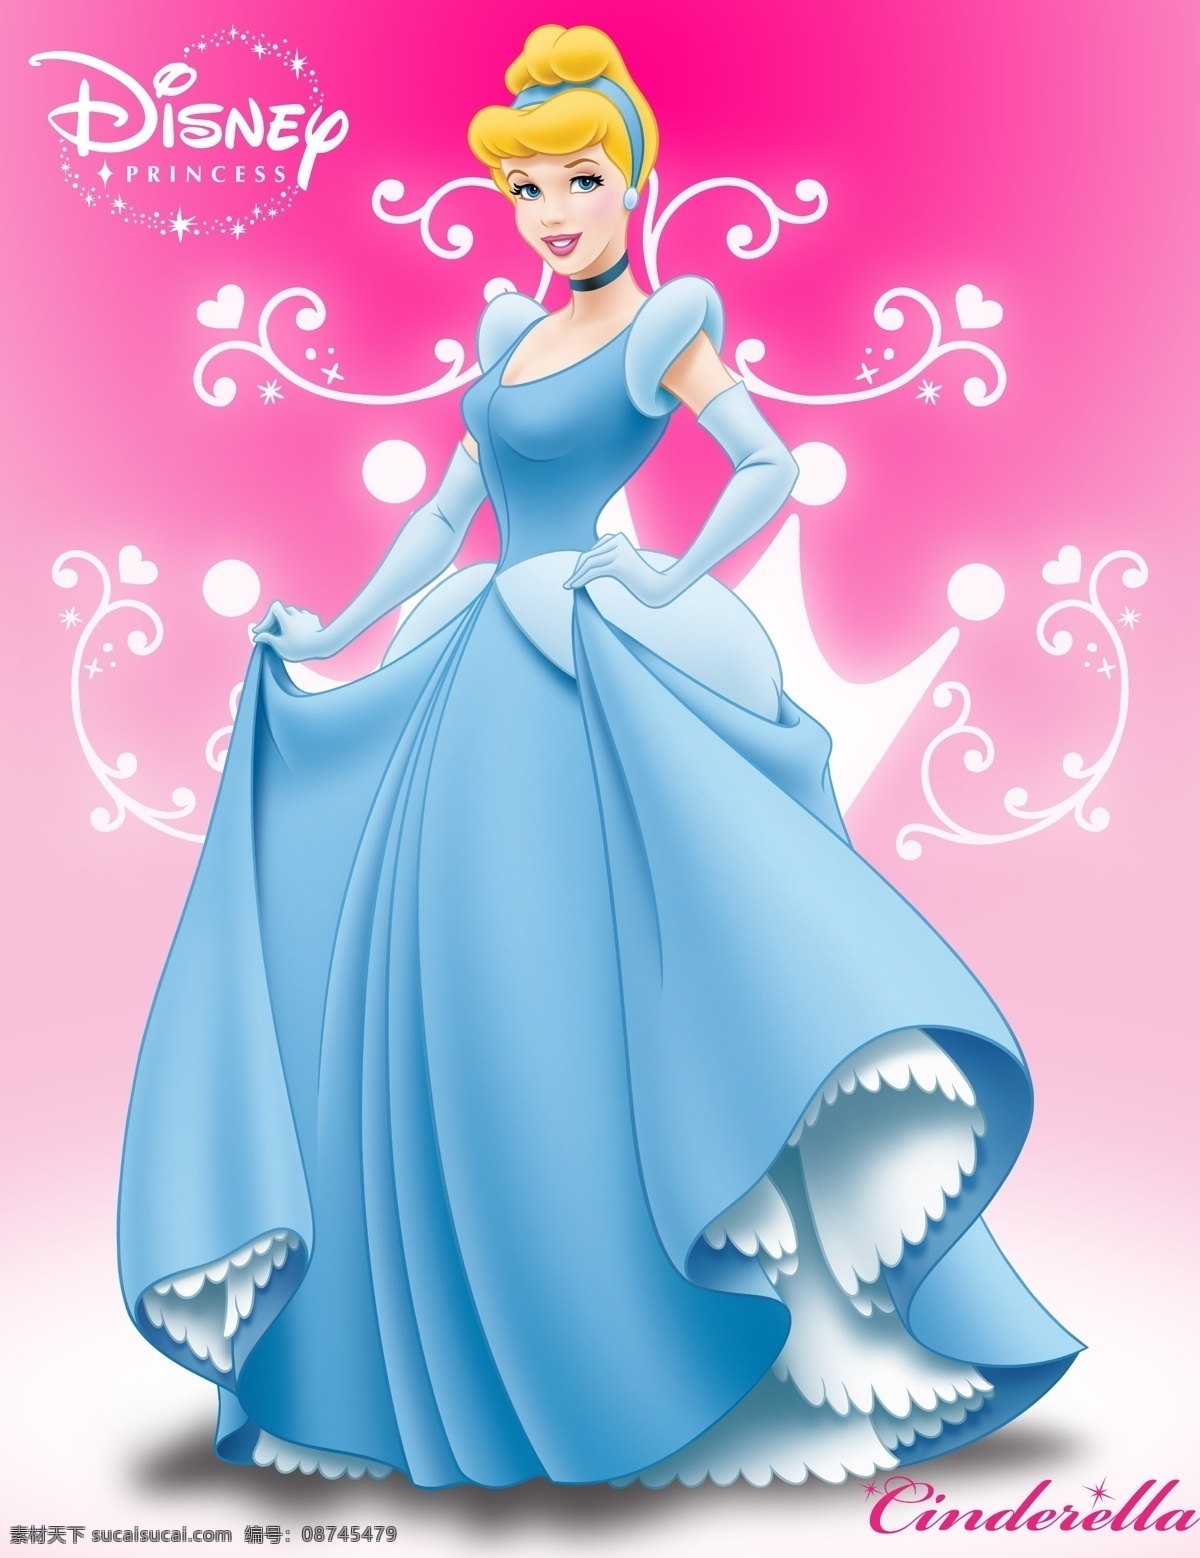 迪士尼 水晶鞋公主 仙 蒂 cinderella 2010年版 仙蒂 仙蒂公主 水晶鞋 继母 仙女 王子 迪士尼小公主 人物 分层 源文件